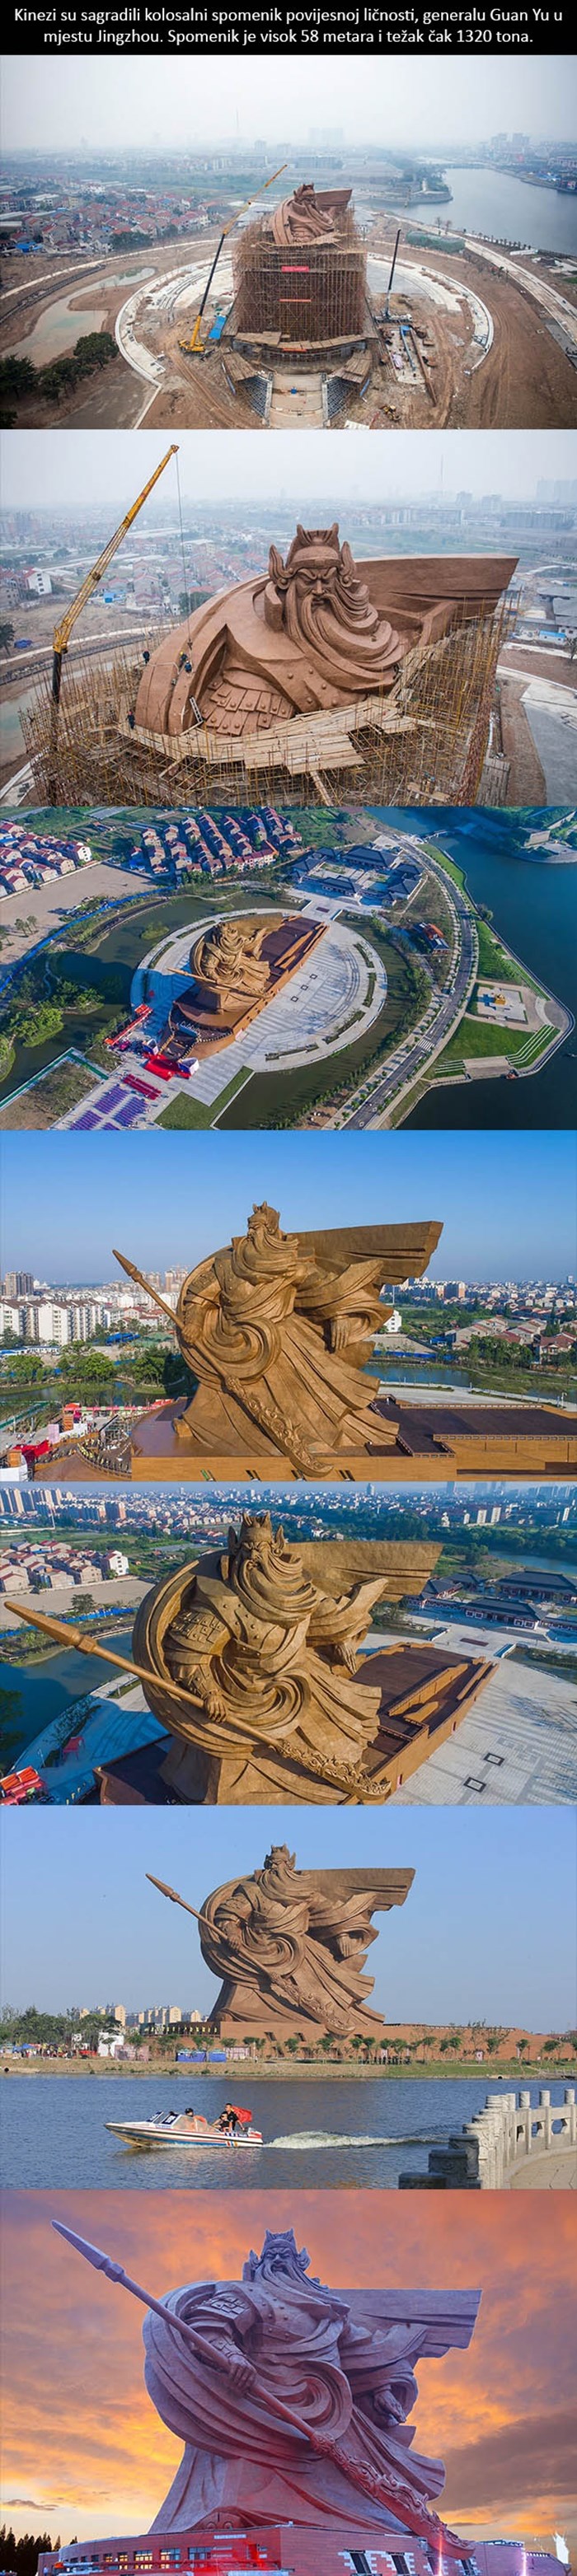 GALERIJA: Ovaj spomenik MADE IN CHINA težak je 1320 tona!